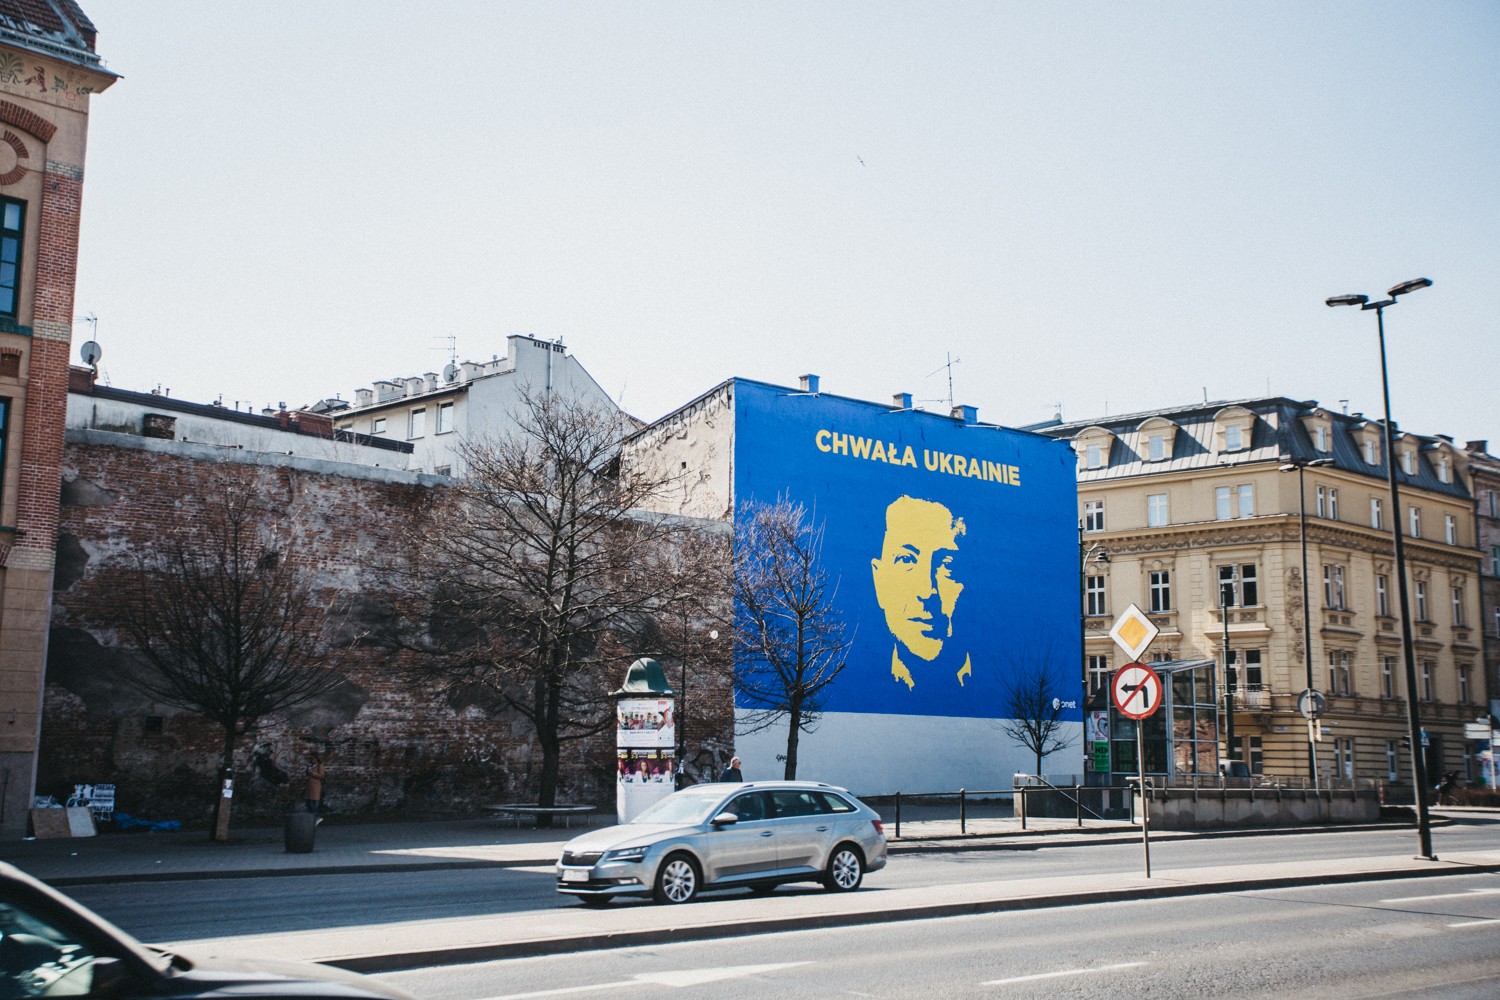 Mural artystyczny Onet | CHWAŁA UKRAINIE | Portfolio